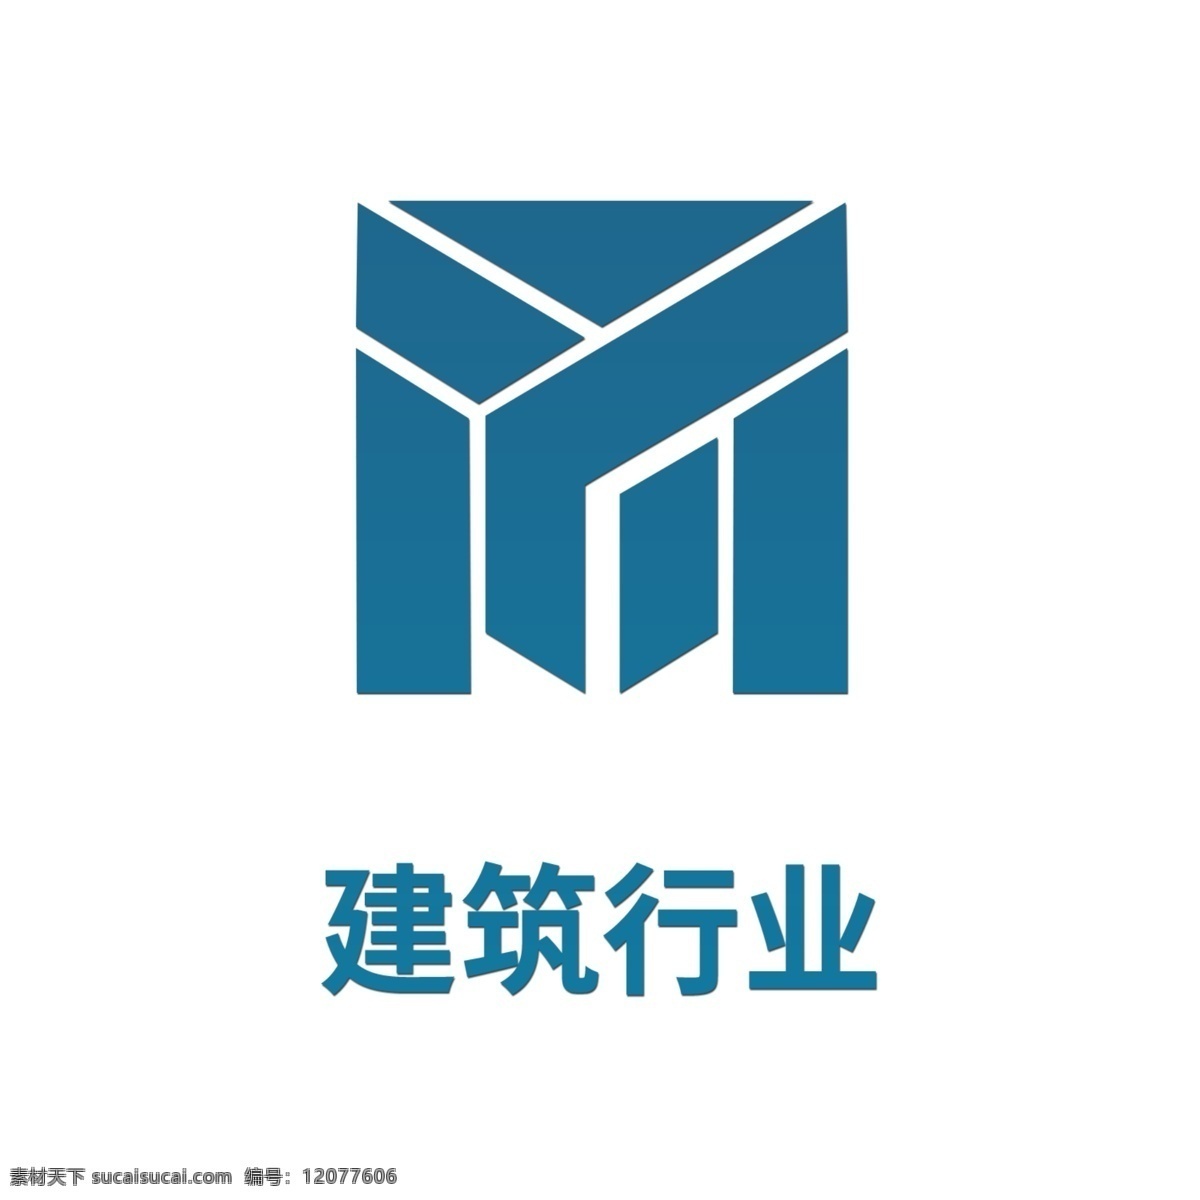 建筑 行业 logo logo模板 logo设计 行业标志